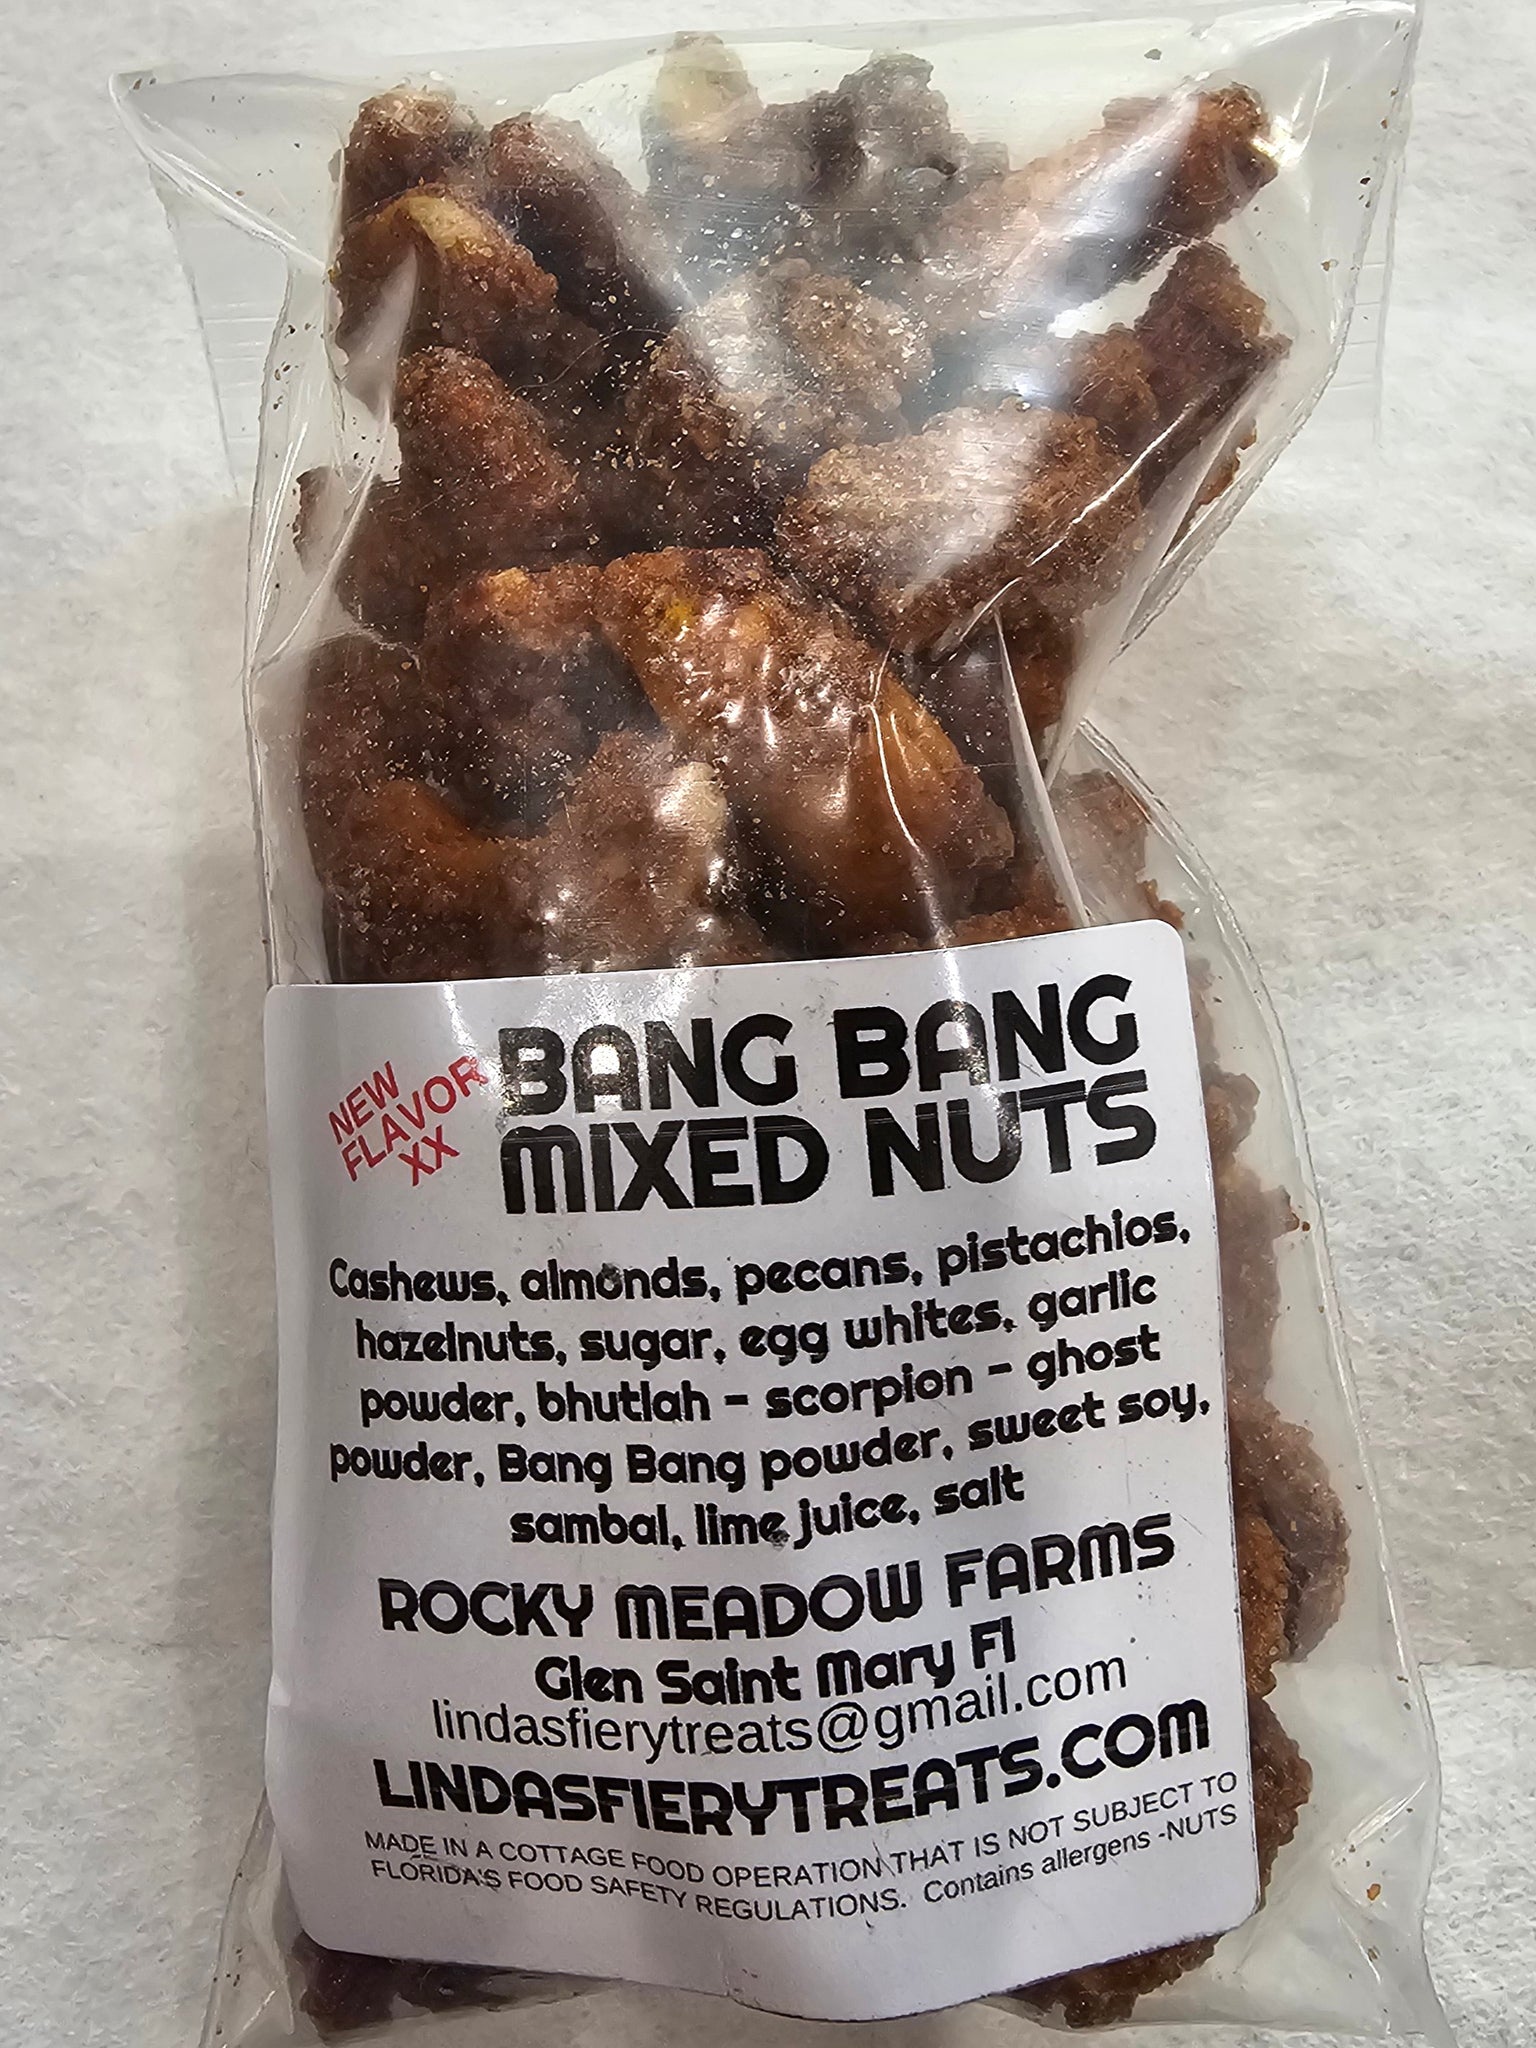 NUTS - Bang bang spicy nuts.